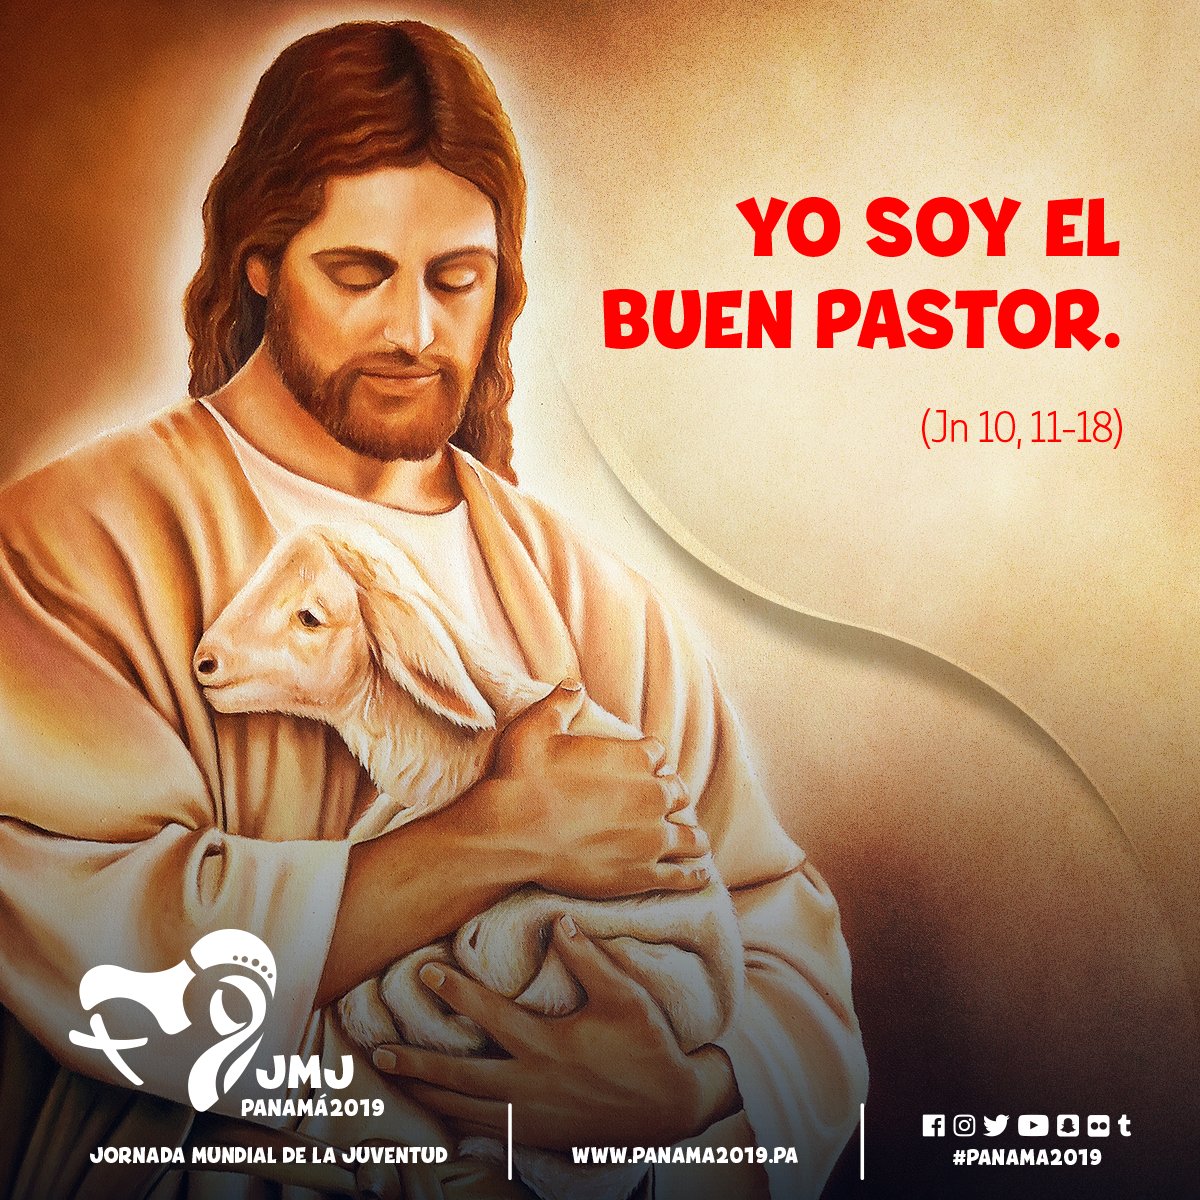 Jmj Panama 2019 On Twitter Hoy Es El Dia Del Buen Pastor